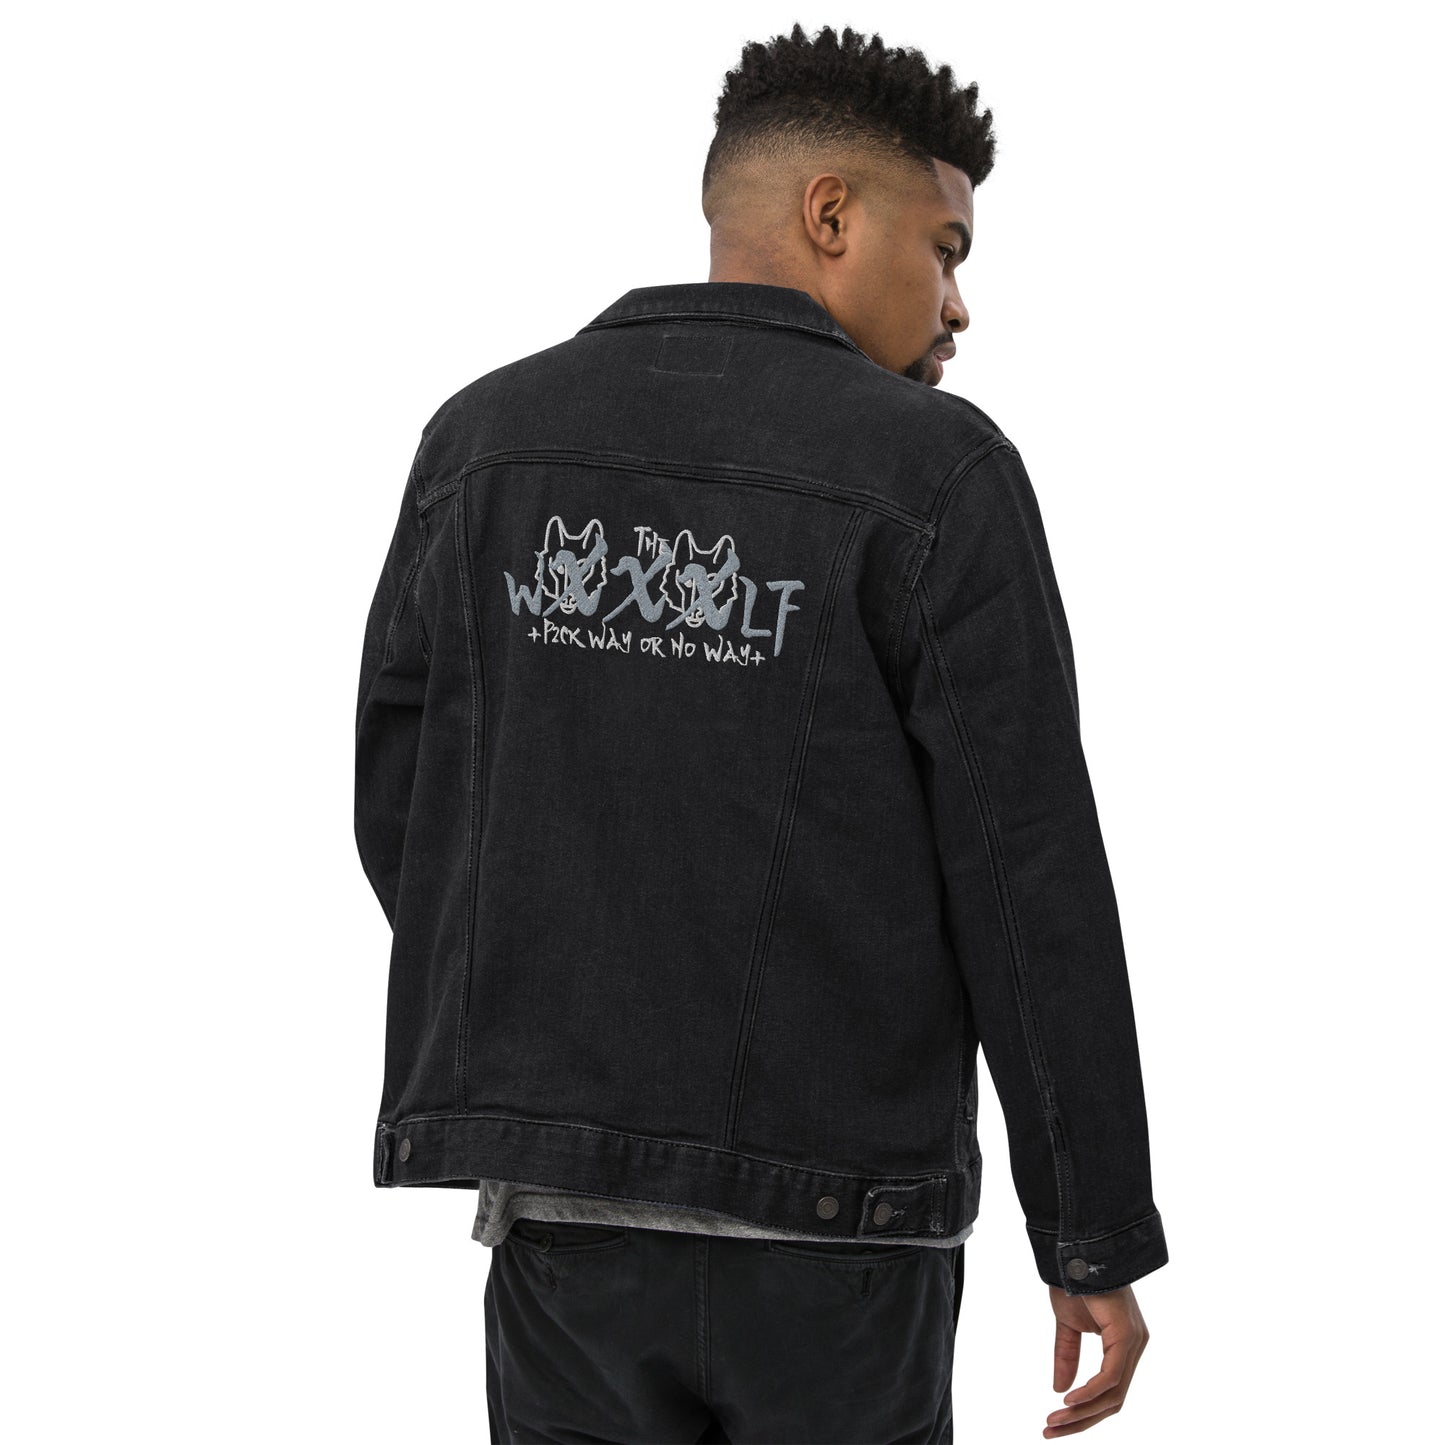 "Wxxxlf" Charcoal Black Denim Jacket